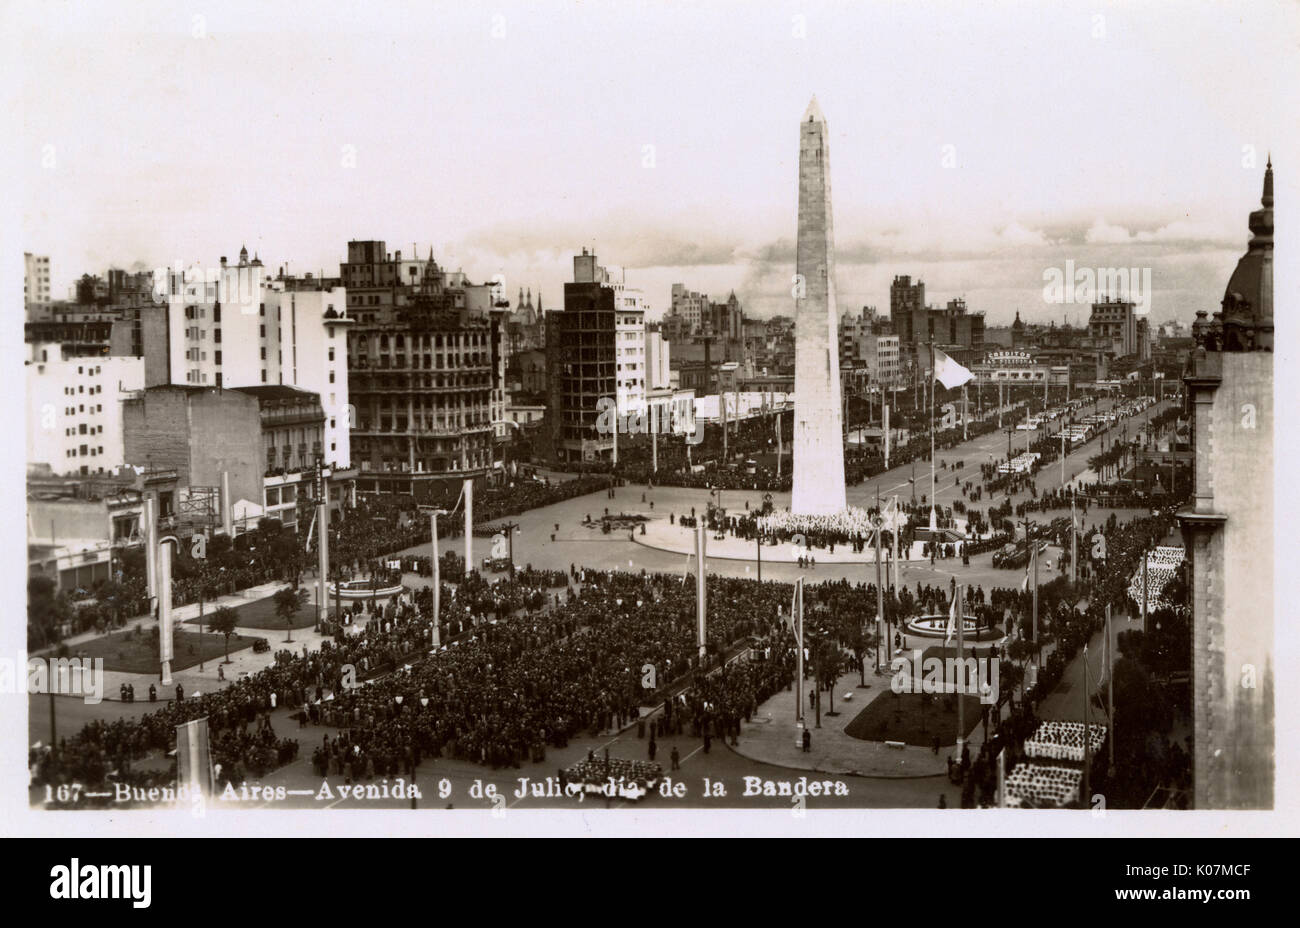 Avenida 9 de Julio - Buenos Aires, Argentinien am Tag der Flagge Stockfoto